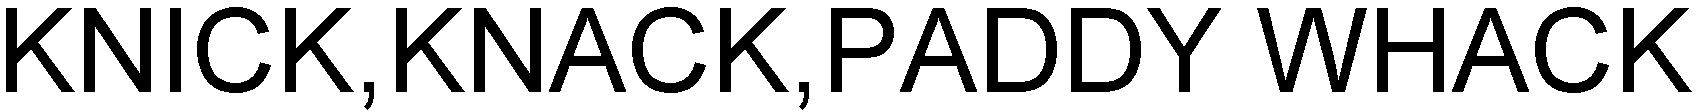 Trademark Logo KNICK, KNACK, PADDY WHACK